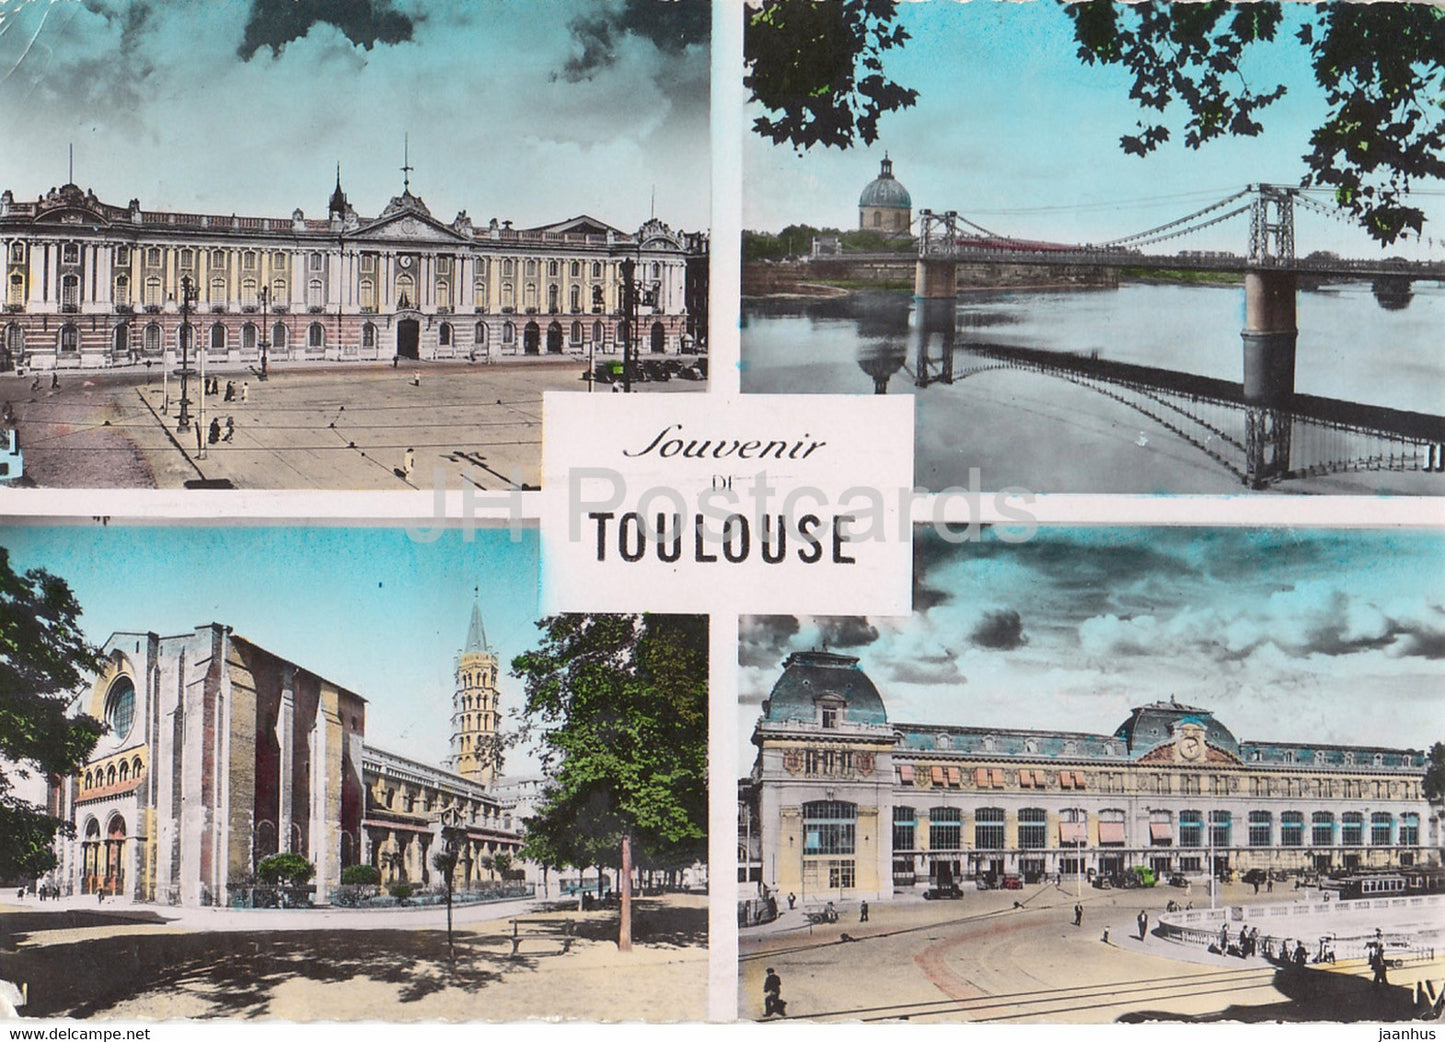 Souvenir de Toulouse - Le Capitole - Le Pont st Pierre et le Dome de la Grave - multiview - 1954 - France - used - JH Postcards